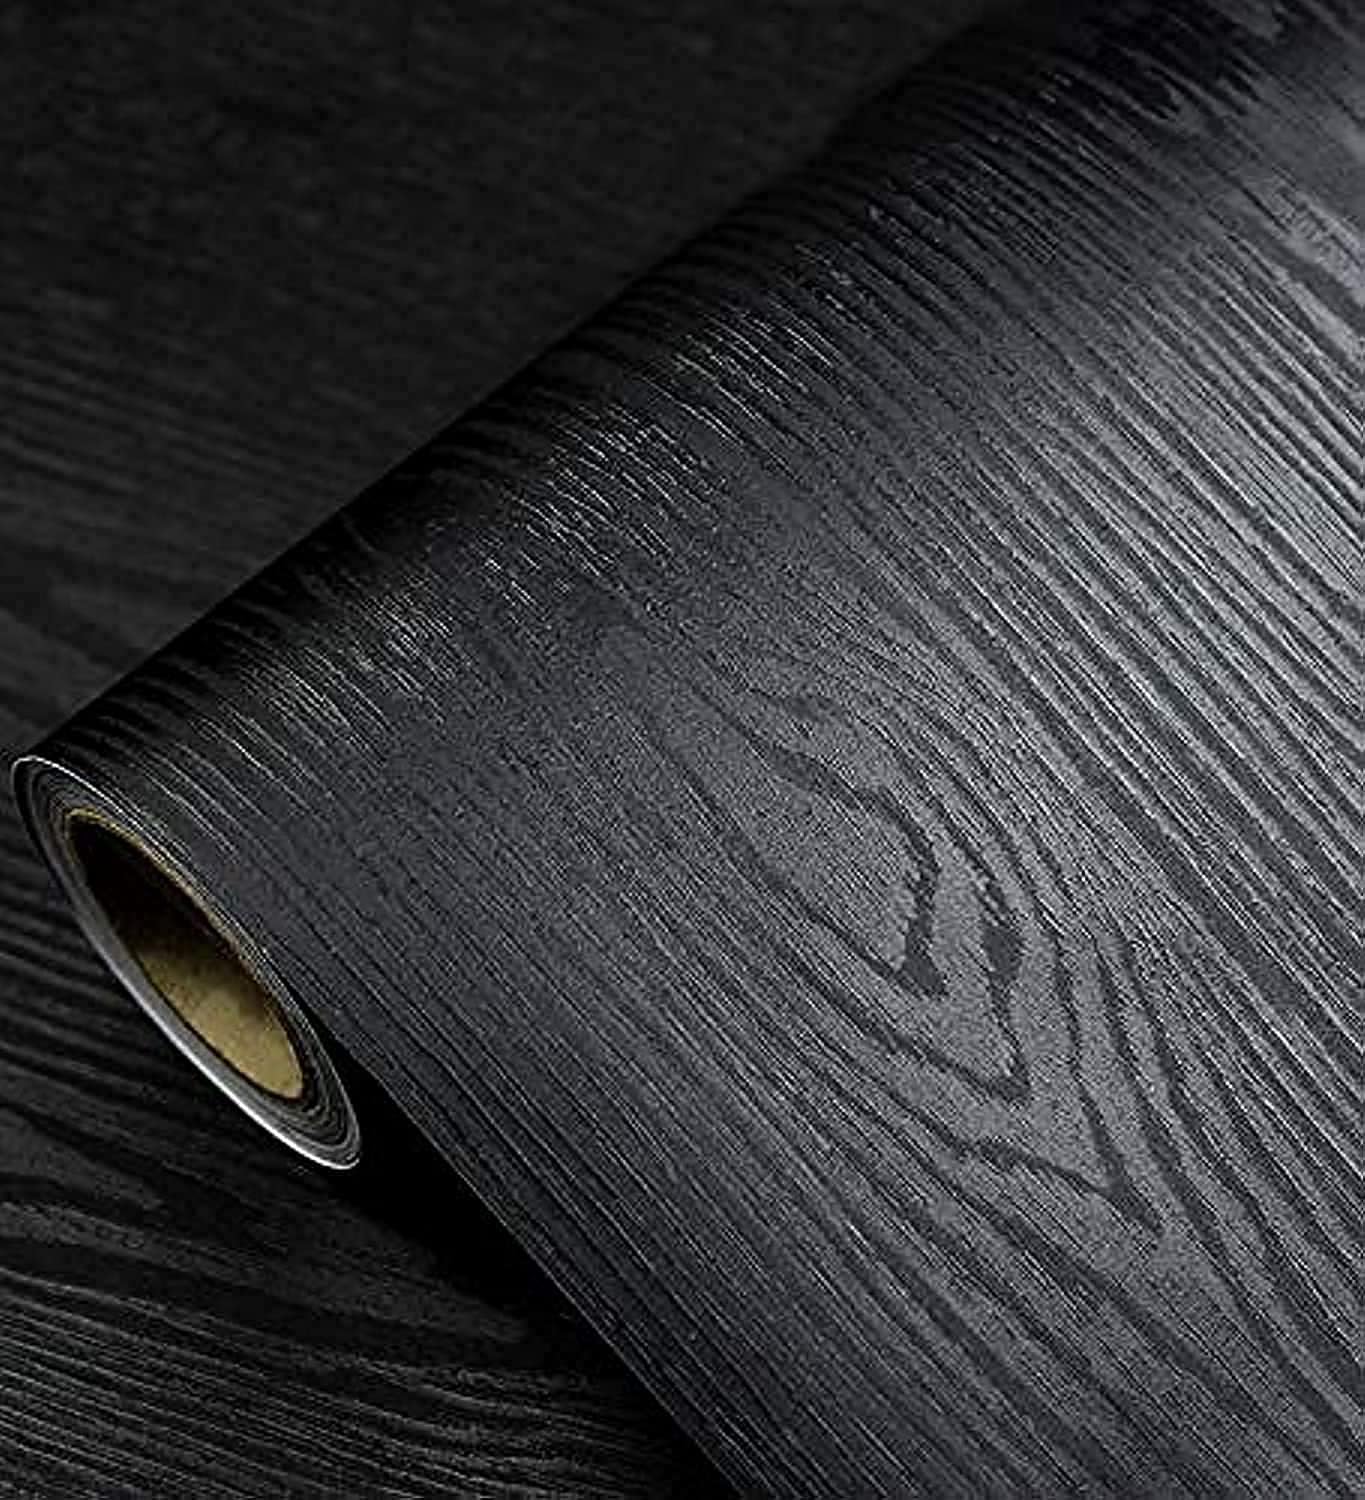 Papel pintado negro – Papel pintado de madera para despegar y pegar – Papel pintado autoadhesivo y extraíble de madera negra para muebles de encimera, pared de cocina, sensación de madera realista, fácil de limpiar, vinilo de 17.7" × 118"